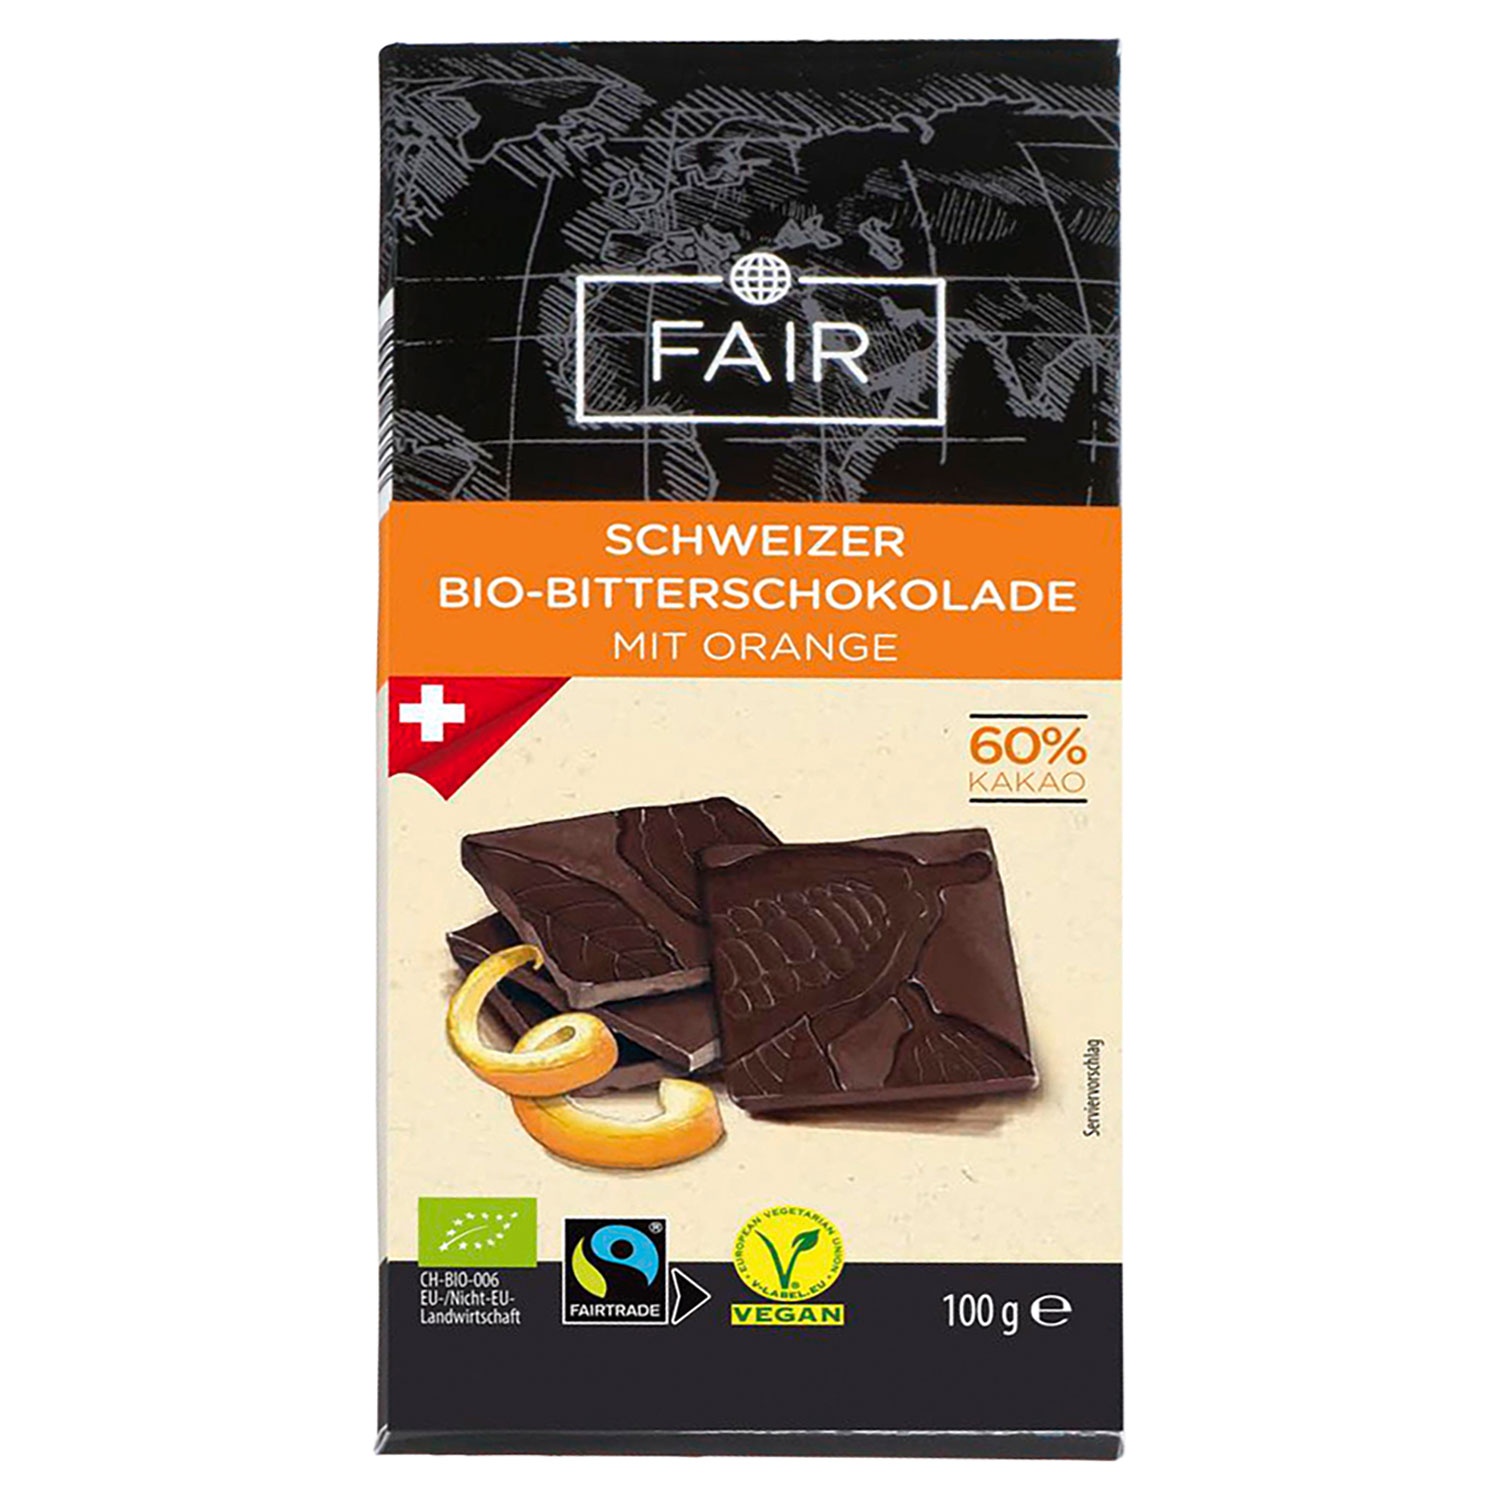 FAIR Bio-Fairtrade-Bitterschokolade 100 g